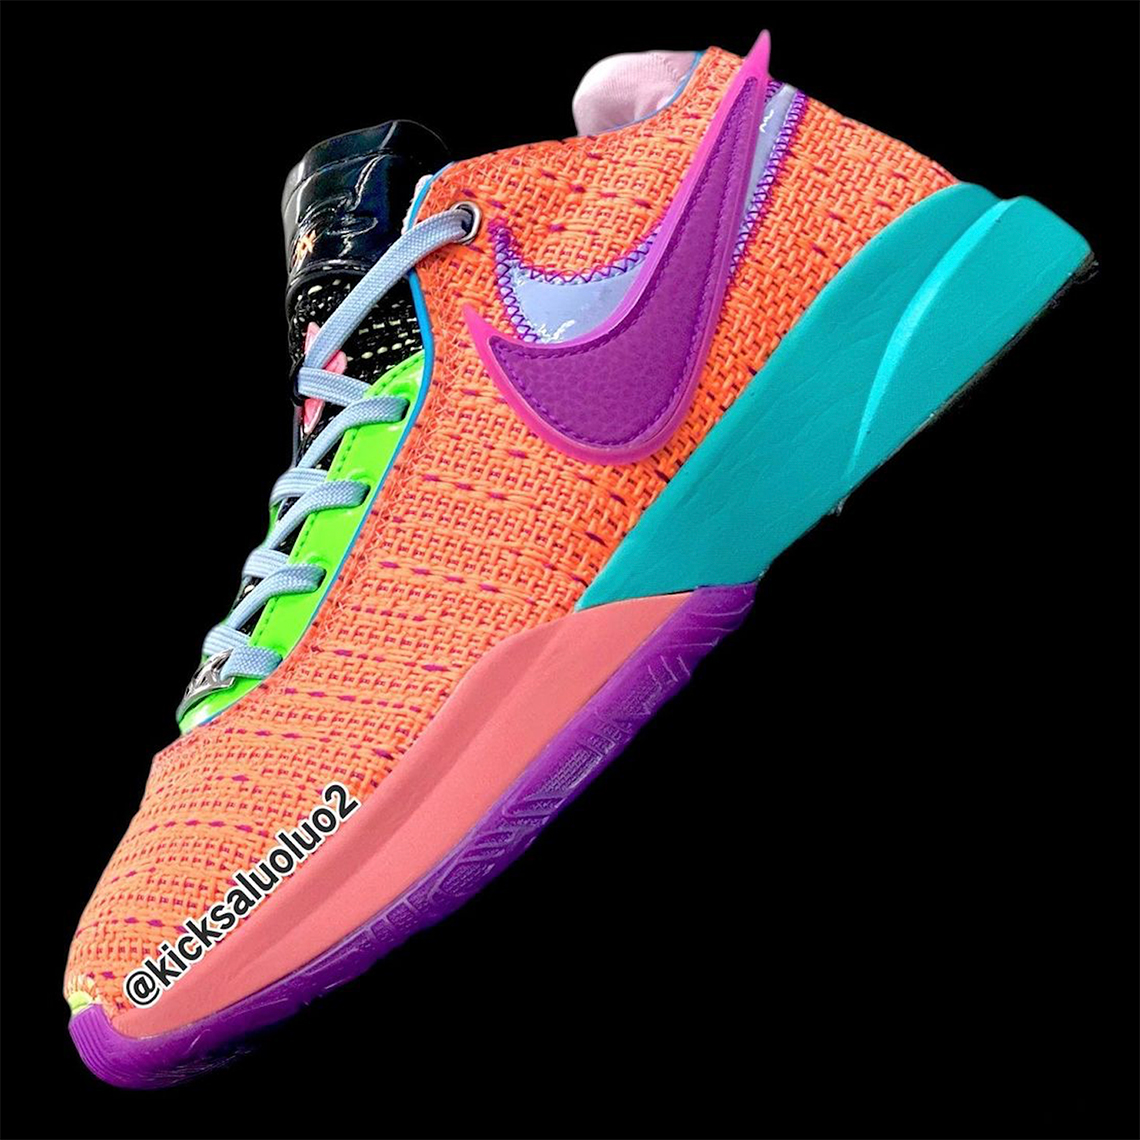 Los colores tropicales brillantes dan energia al Nike LeBron 20